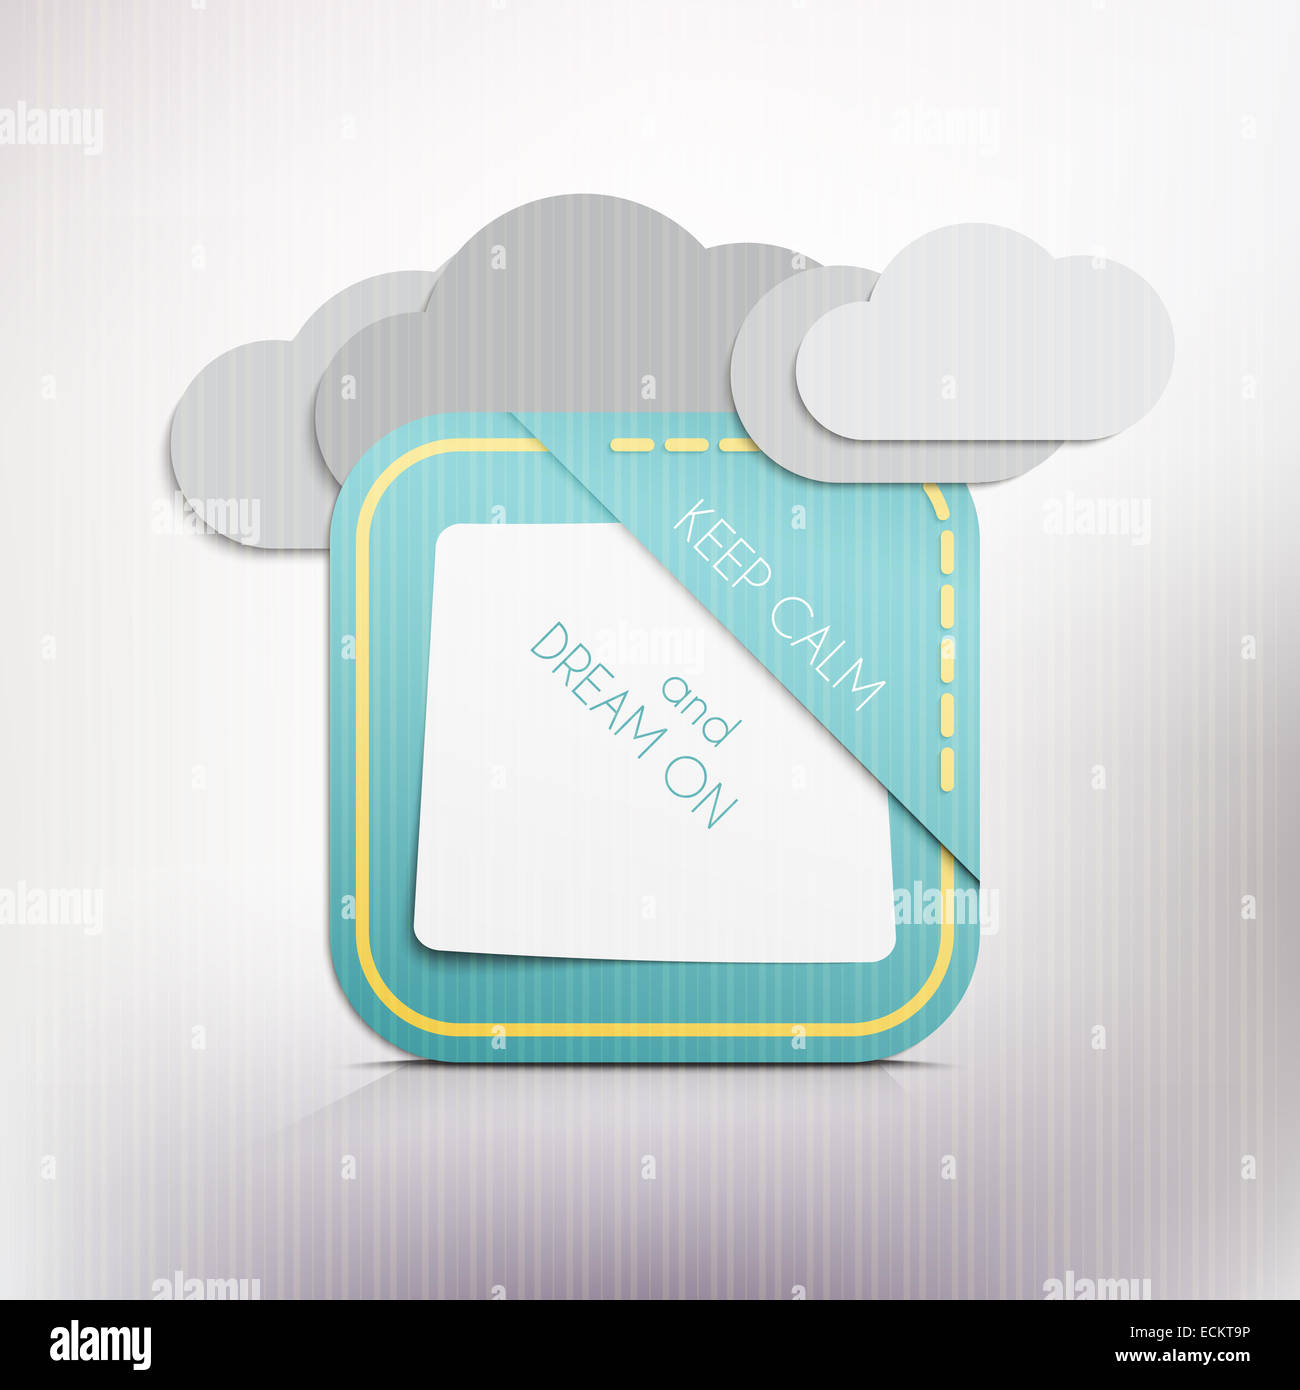 Les nuages et l'article rappel à garder son calme et de rêve sur message. vector graphic design Banque D'Images